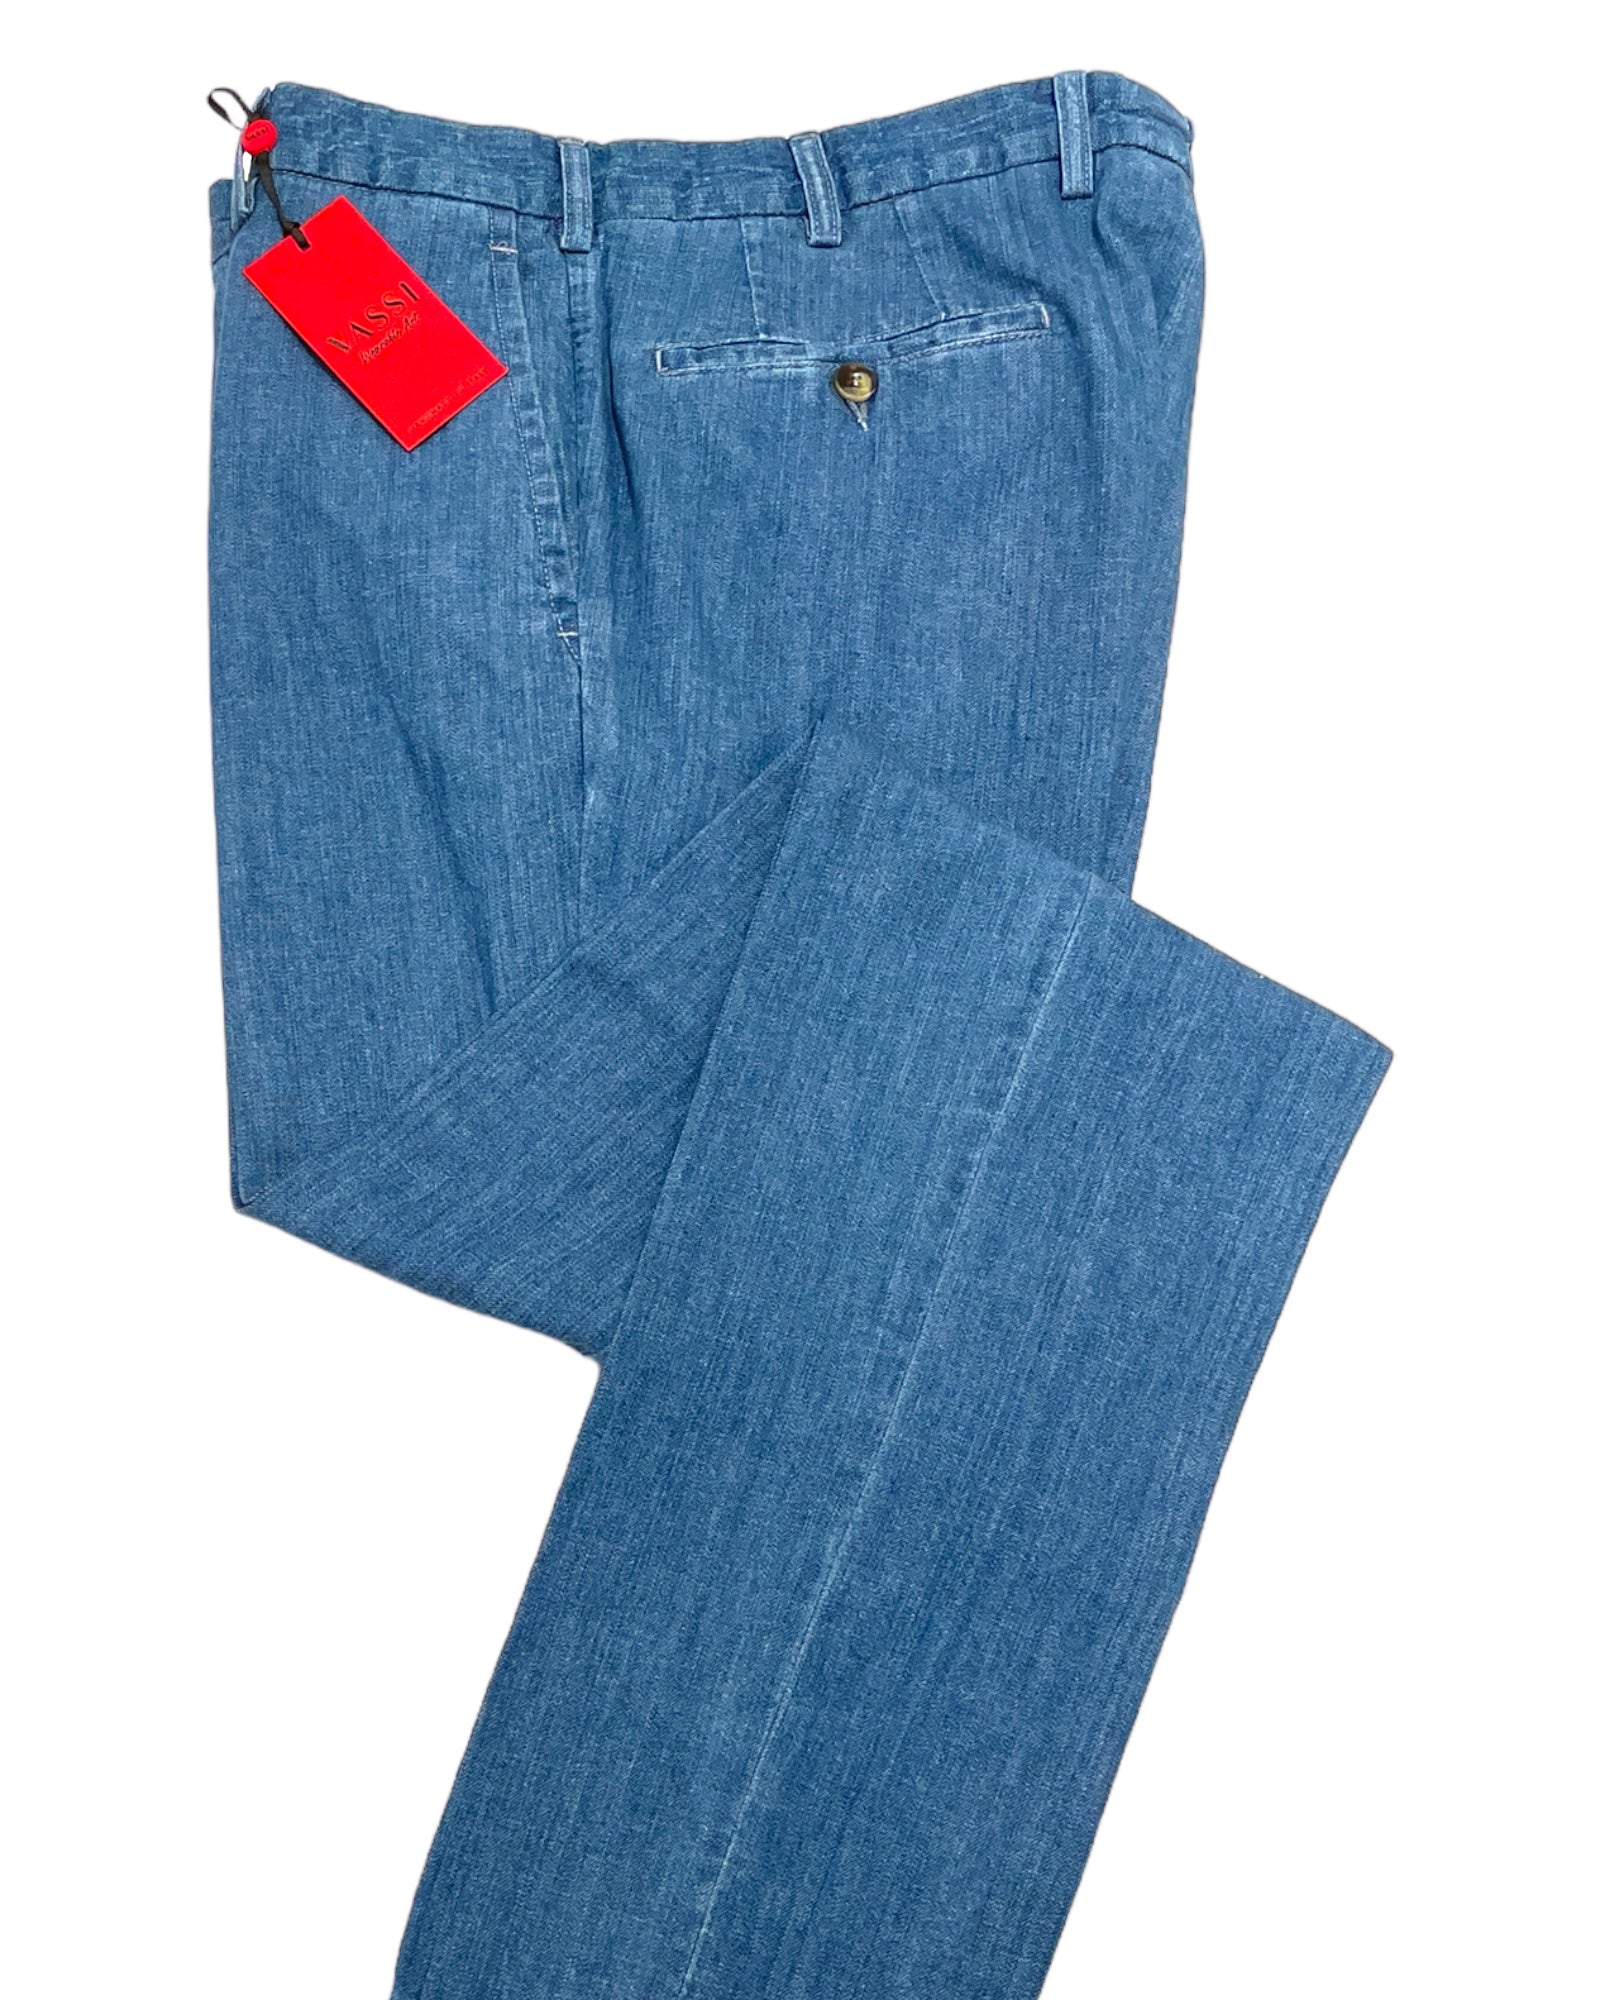 Light Weight Denim Cotton Sport Trousers - Blue CASUAL PANTS50 EU